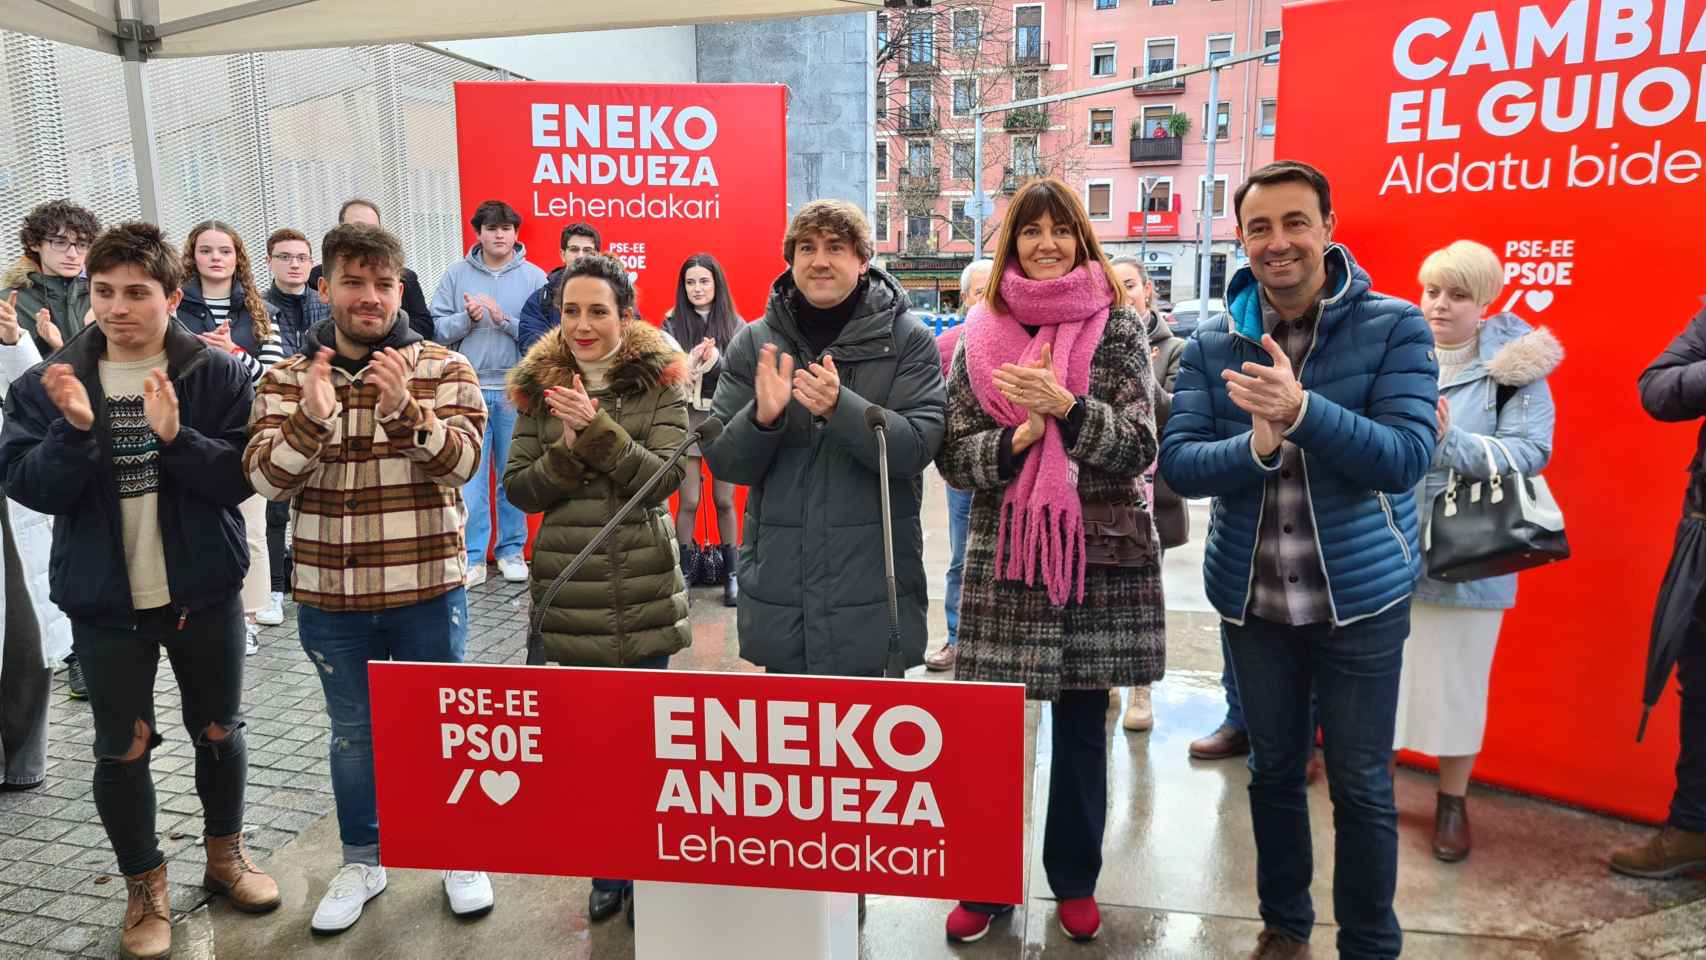 El secretario general del PSE-EE y candidato a lehenakari, Eneko Andueza, junto a la consejera de Trabajo y Empleo, Idoia Mendia, durante el 120 aniversario de las juventudes socialistas de Bilbao / PSE-EE